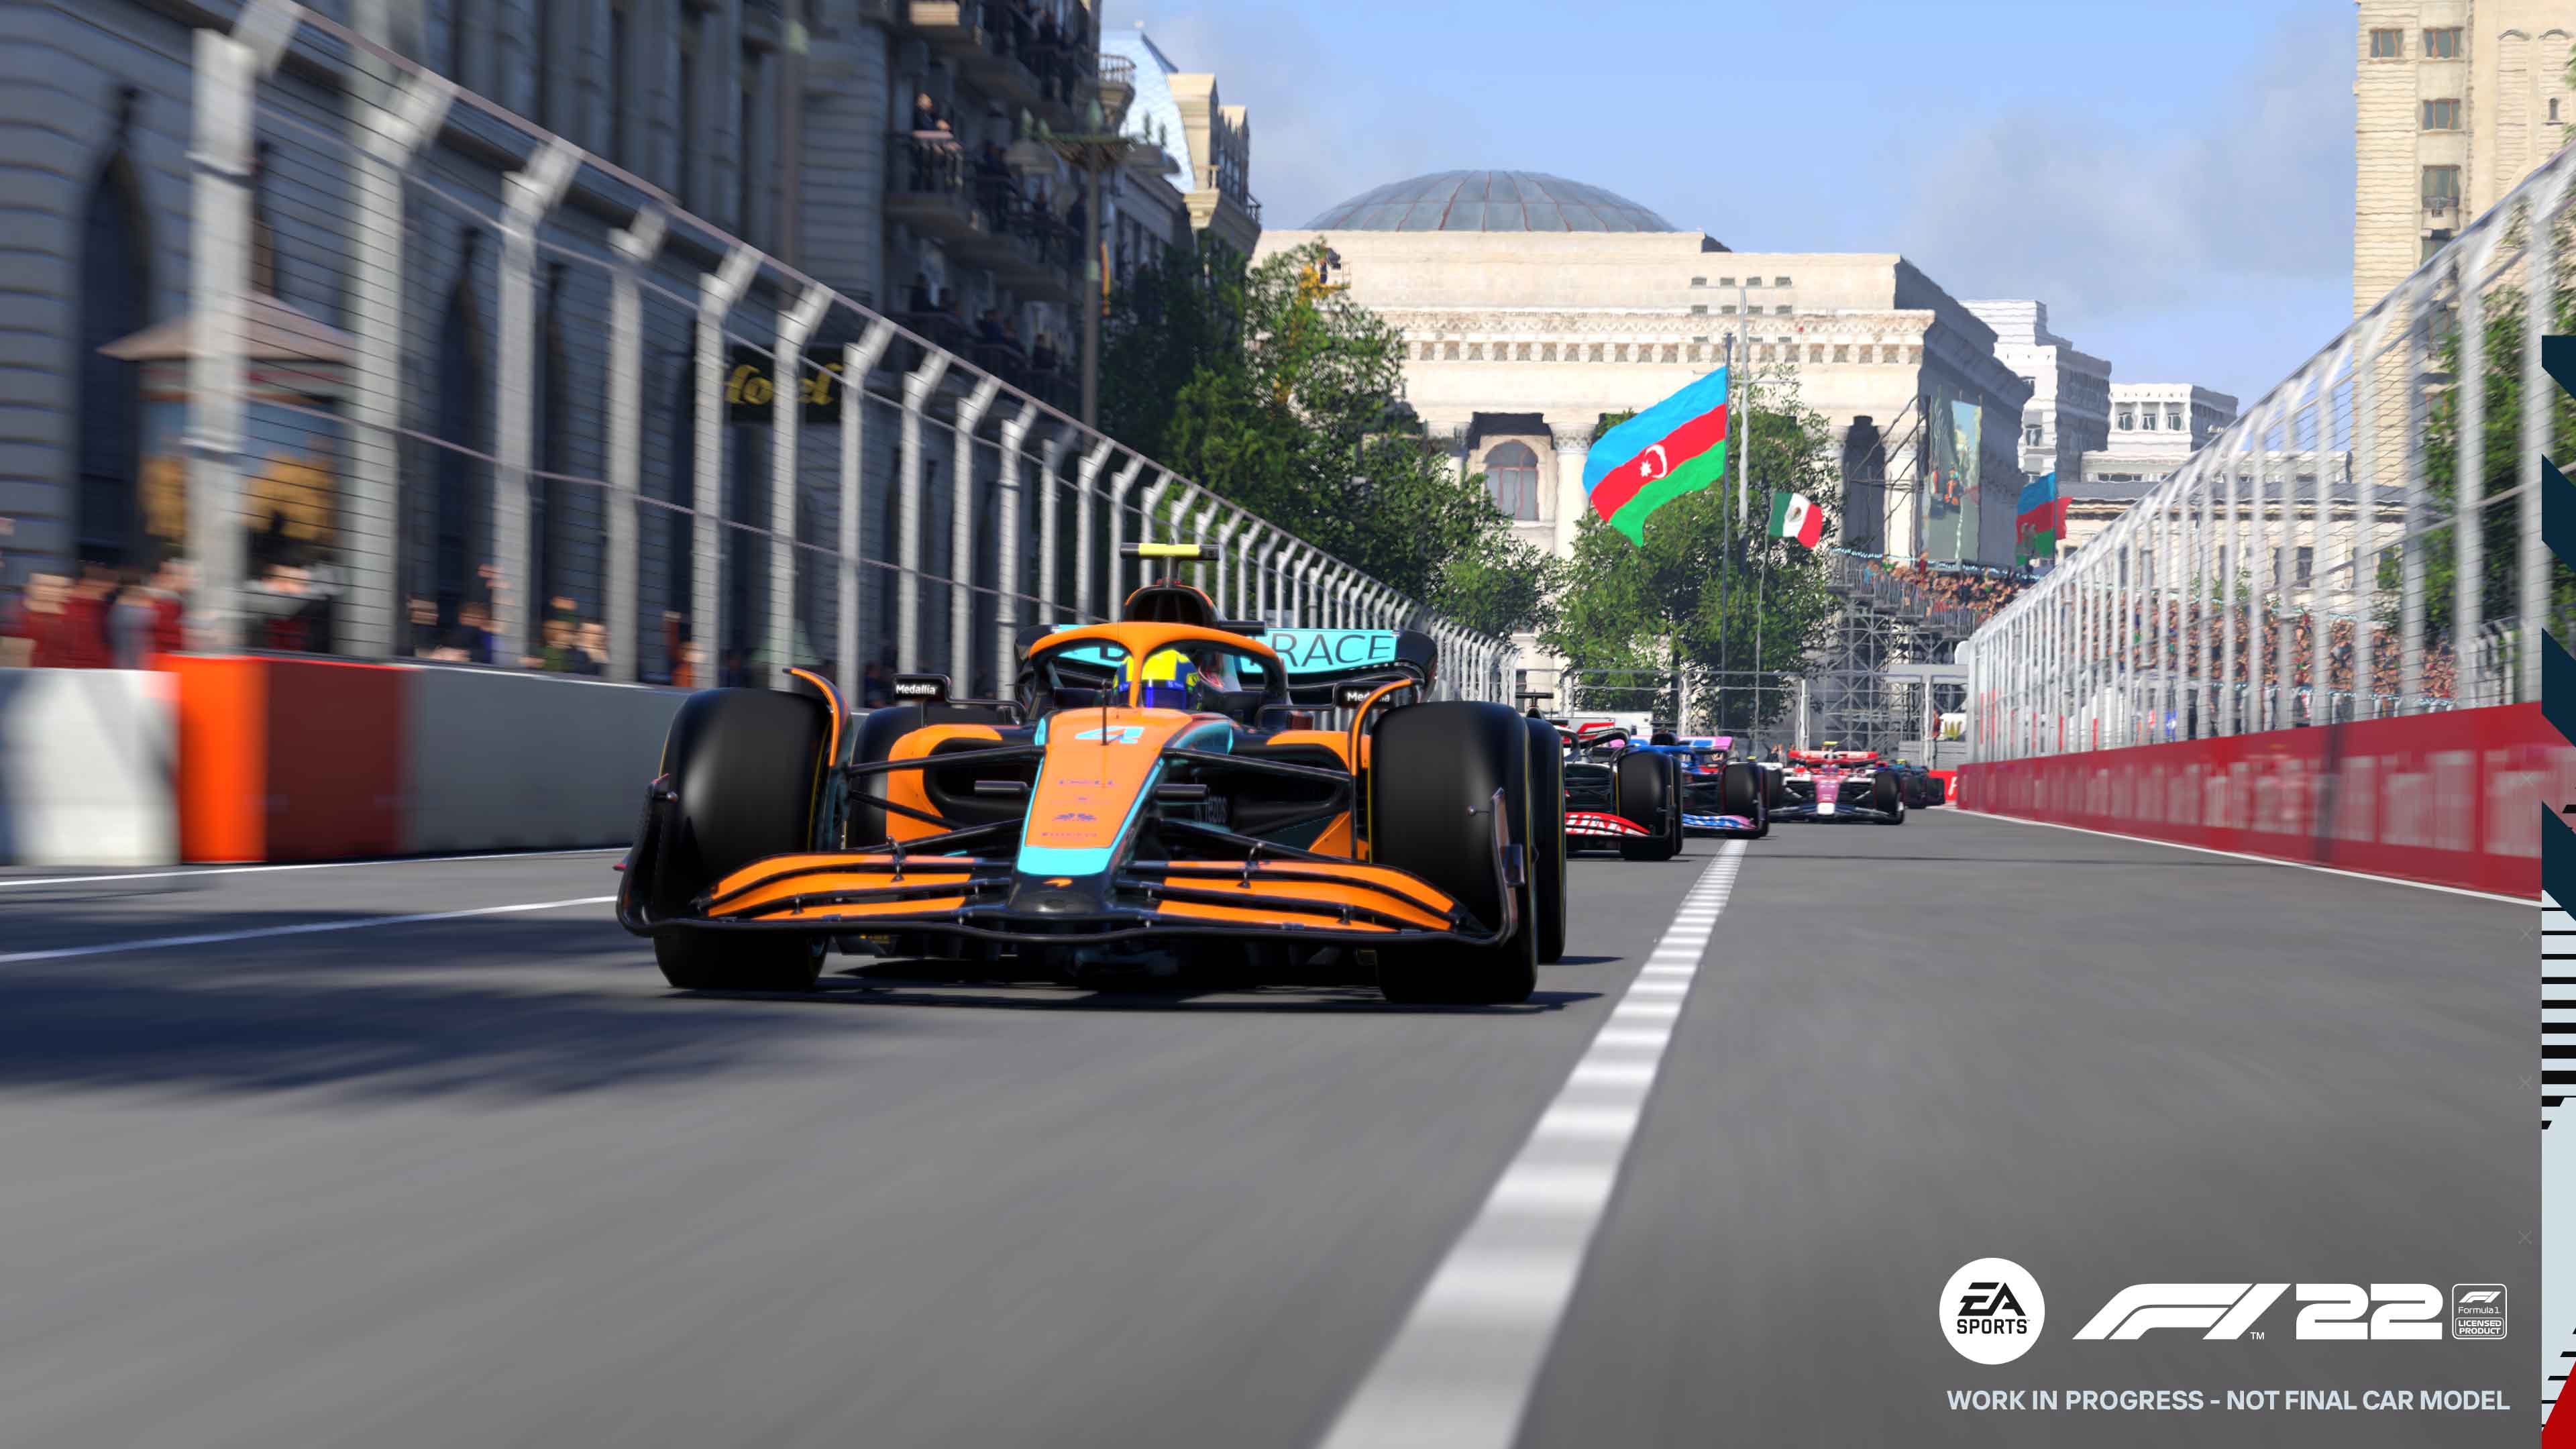 F1 2022 graphic from the Azerbaijan Grand Prix